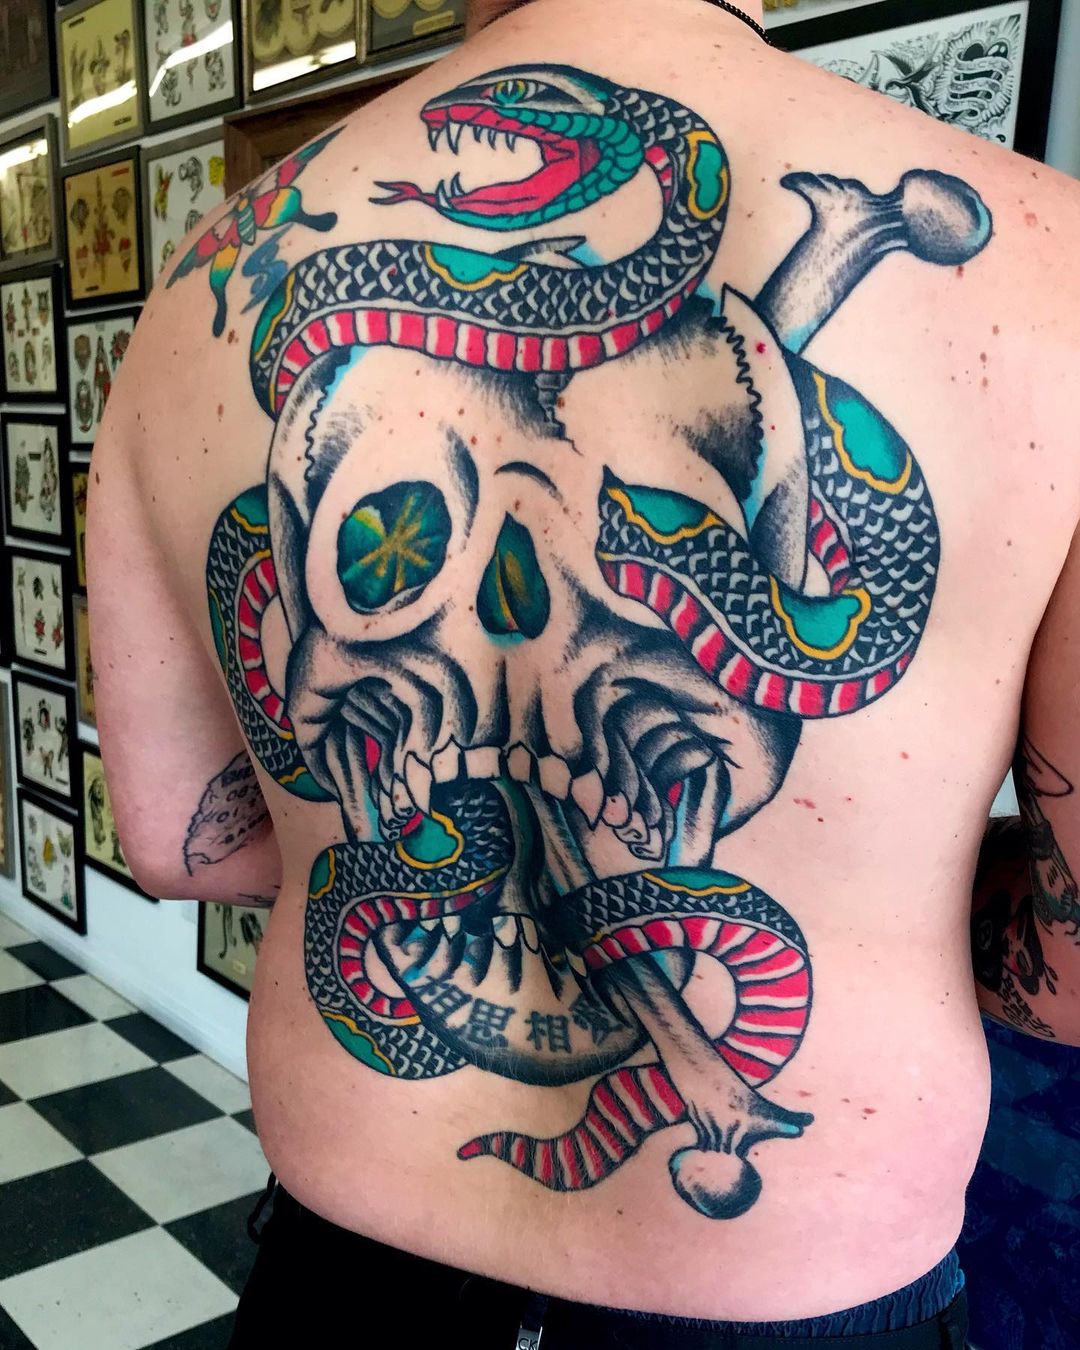 Tatuaje americano tradicional, grande, colorido y en la espalda.